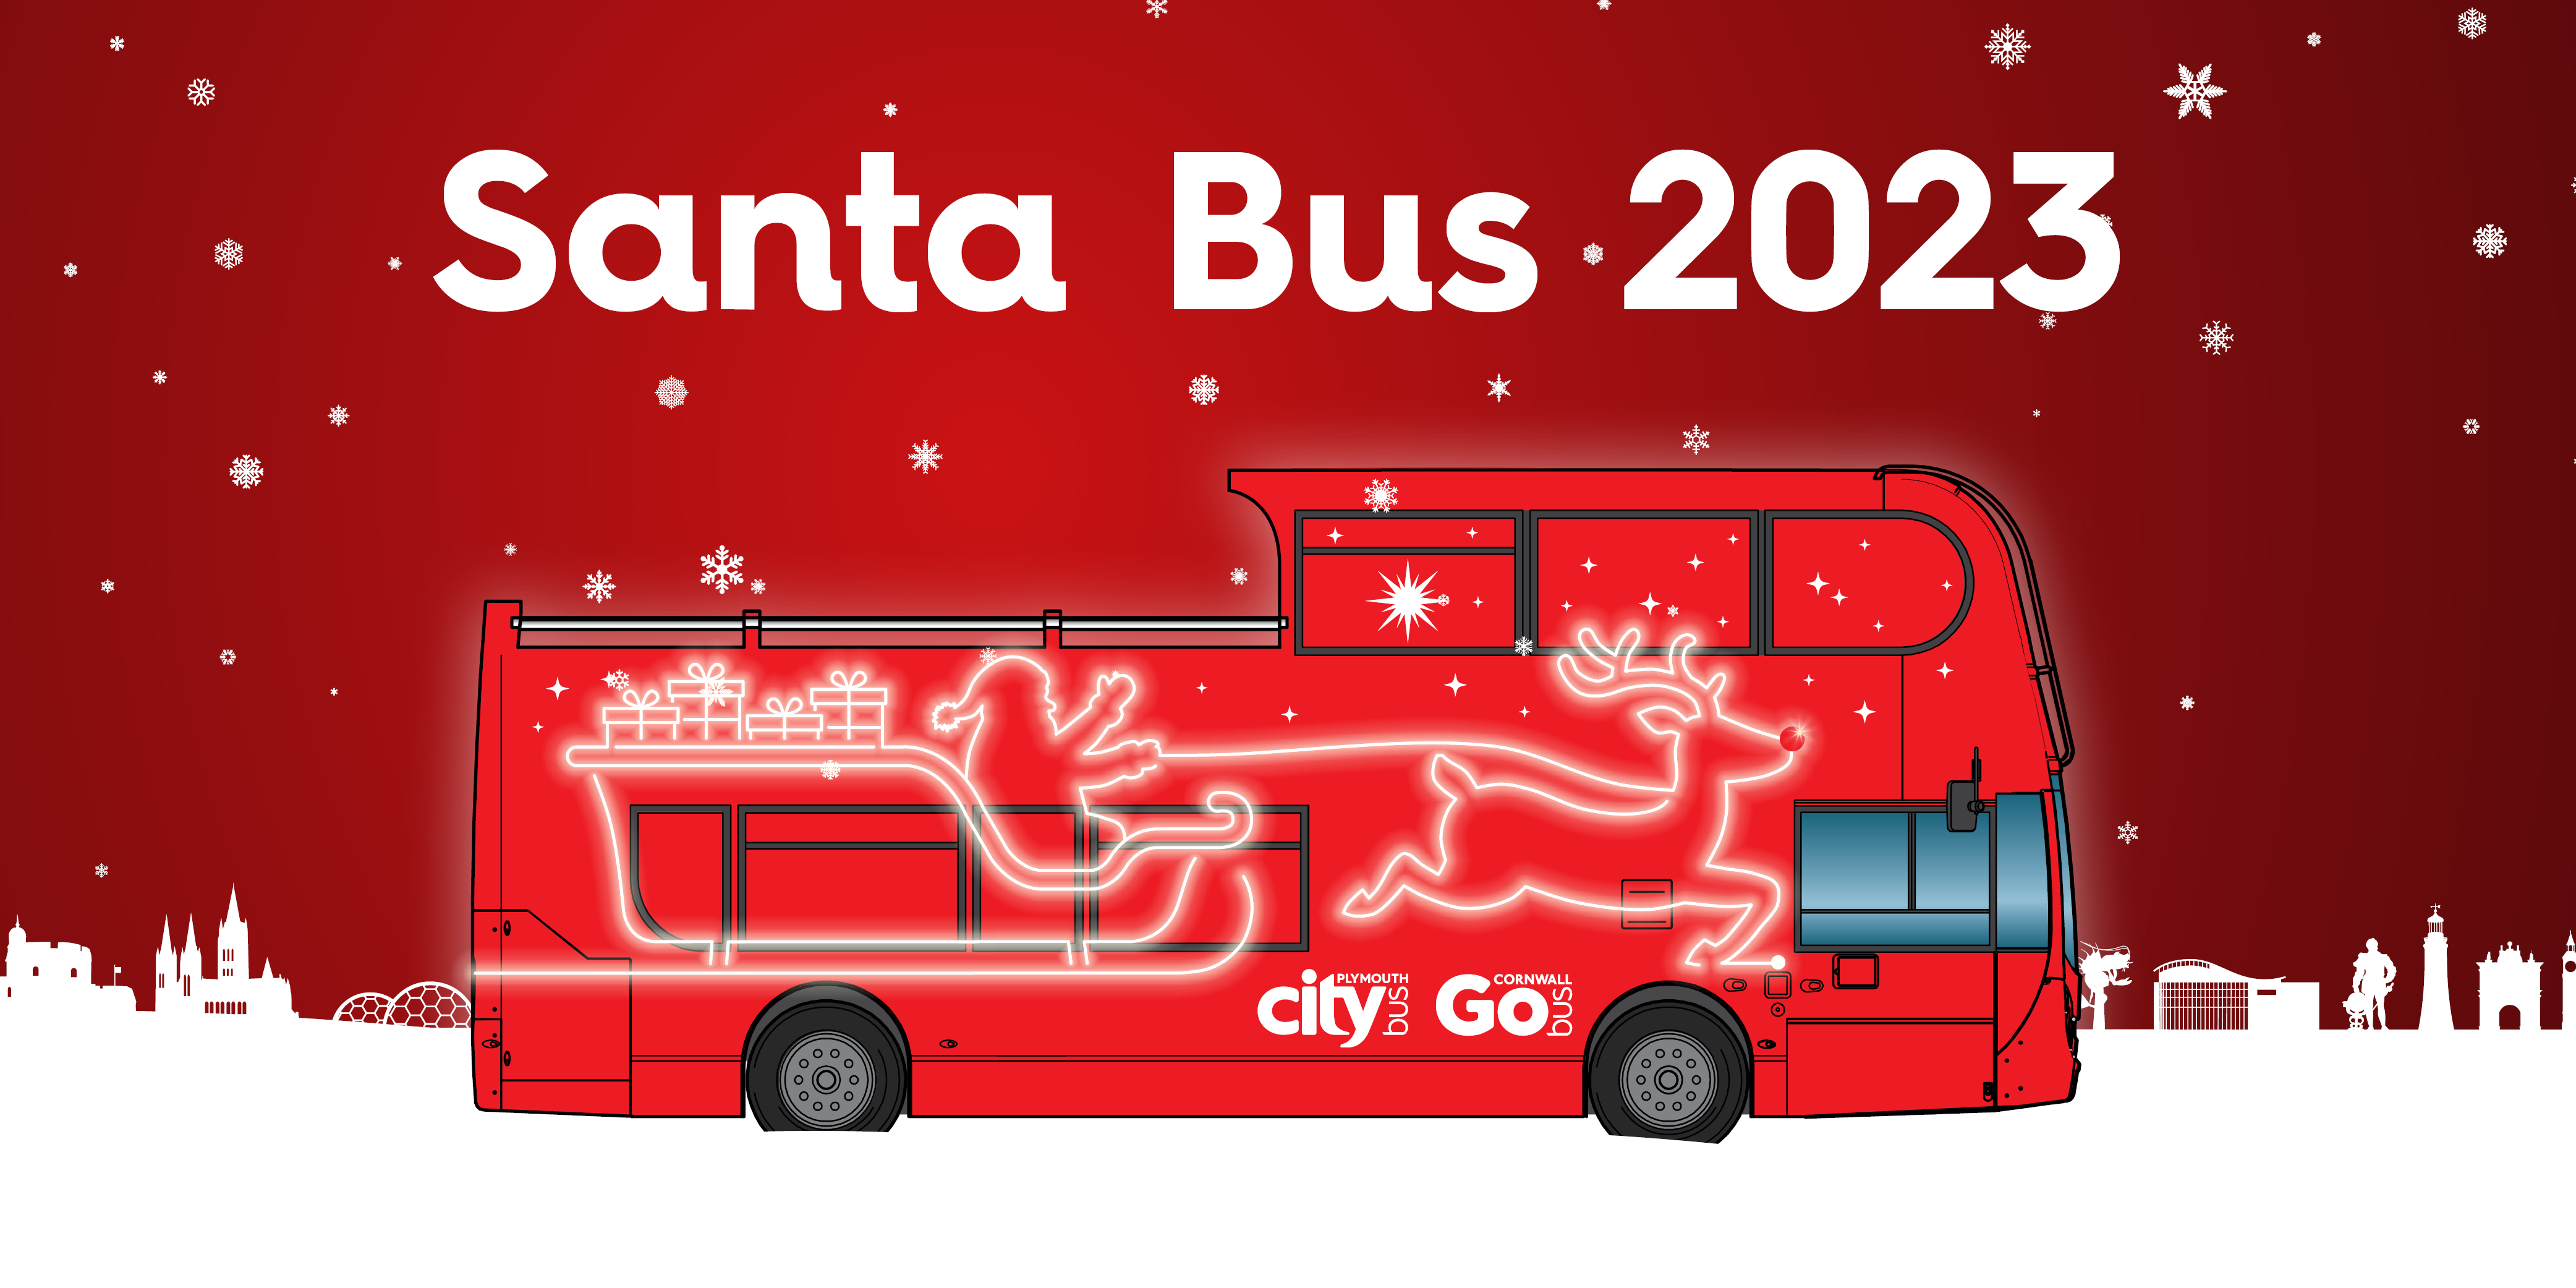 Santa Bus 2023